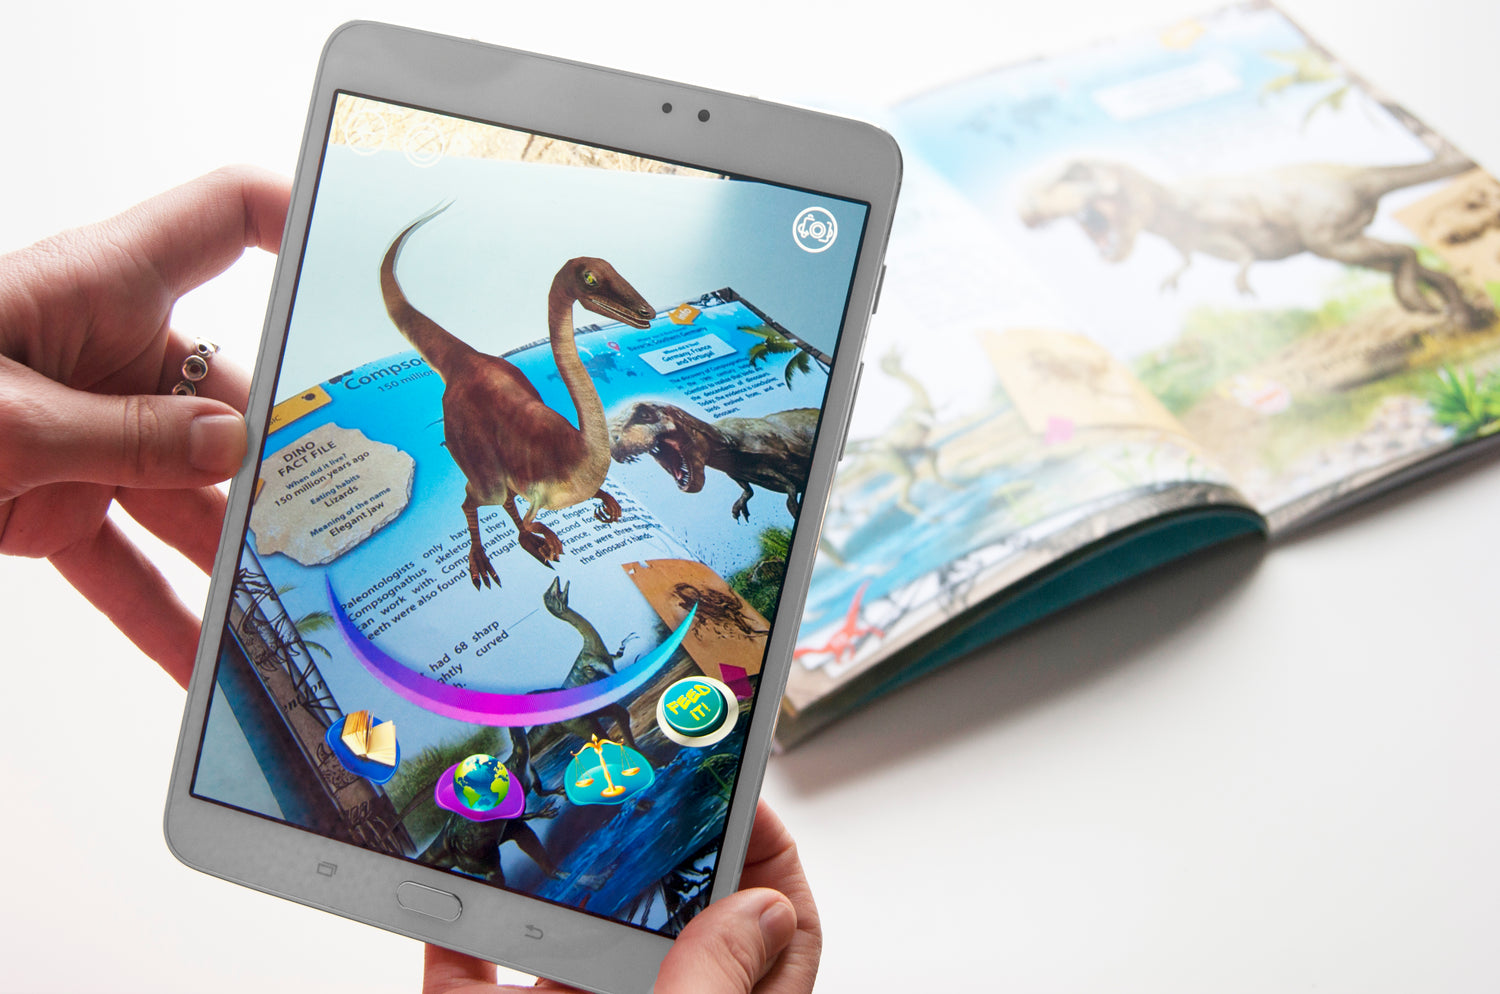 Carte: Dinozauri - Enciclopedie interactivă cu realitate augmentată, 4D,  pentru copii și adolescenți, Carteom